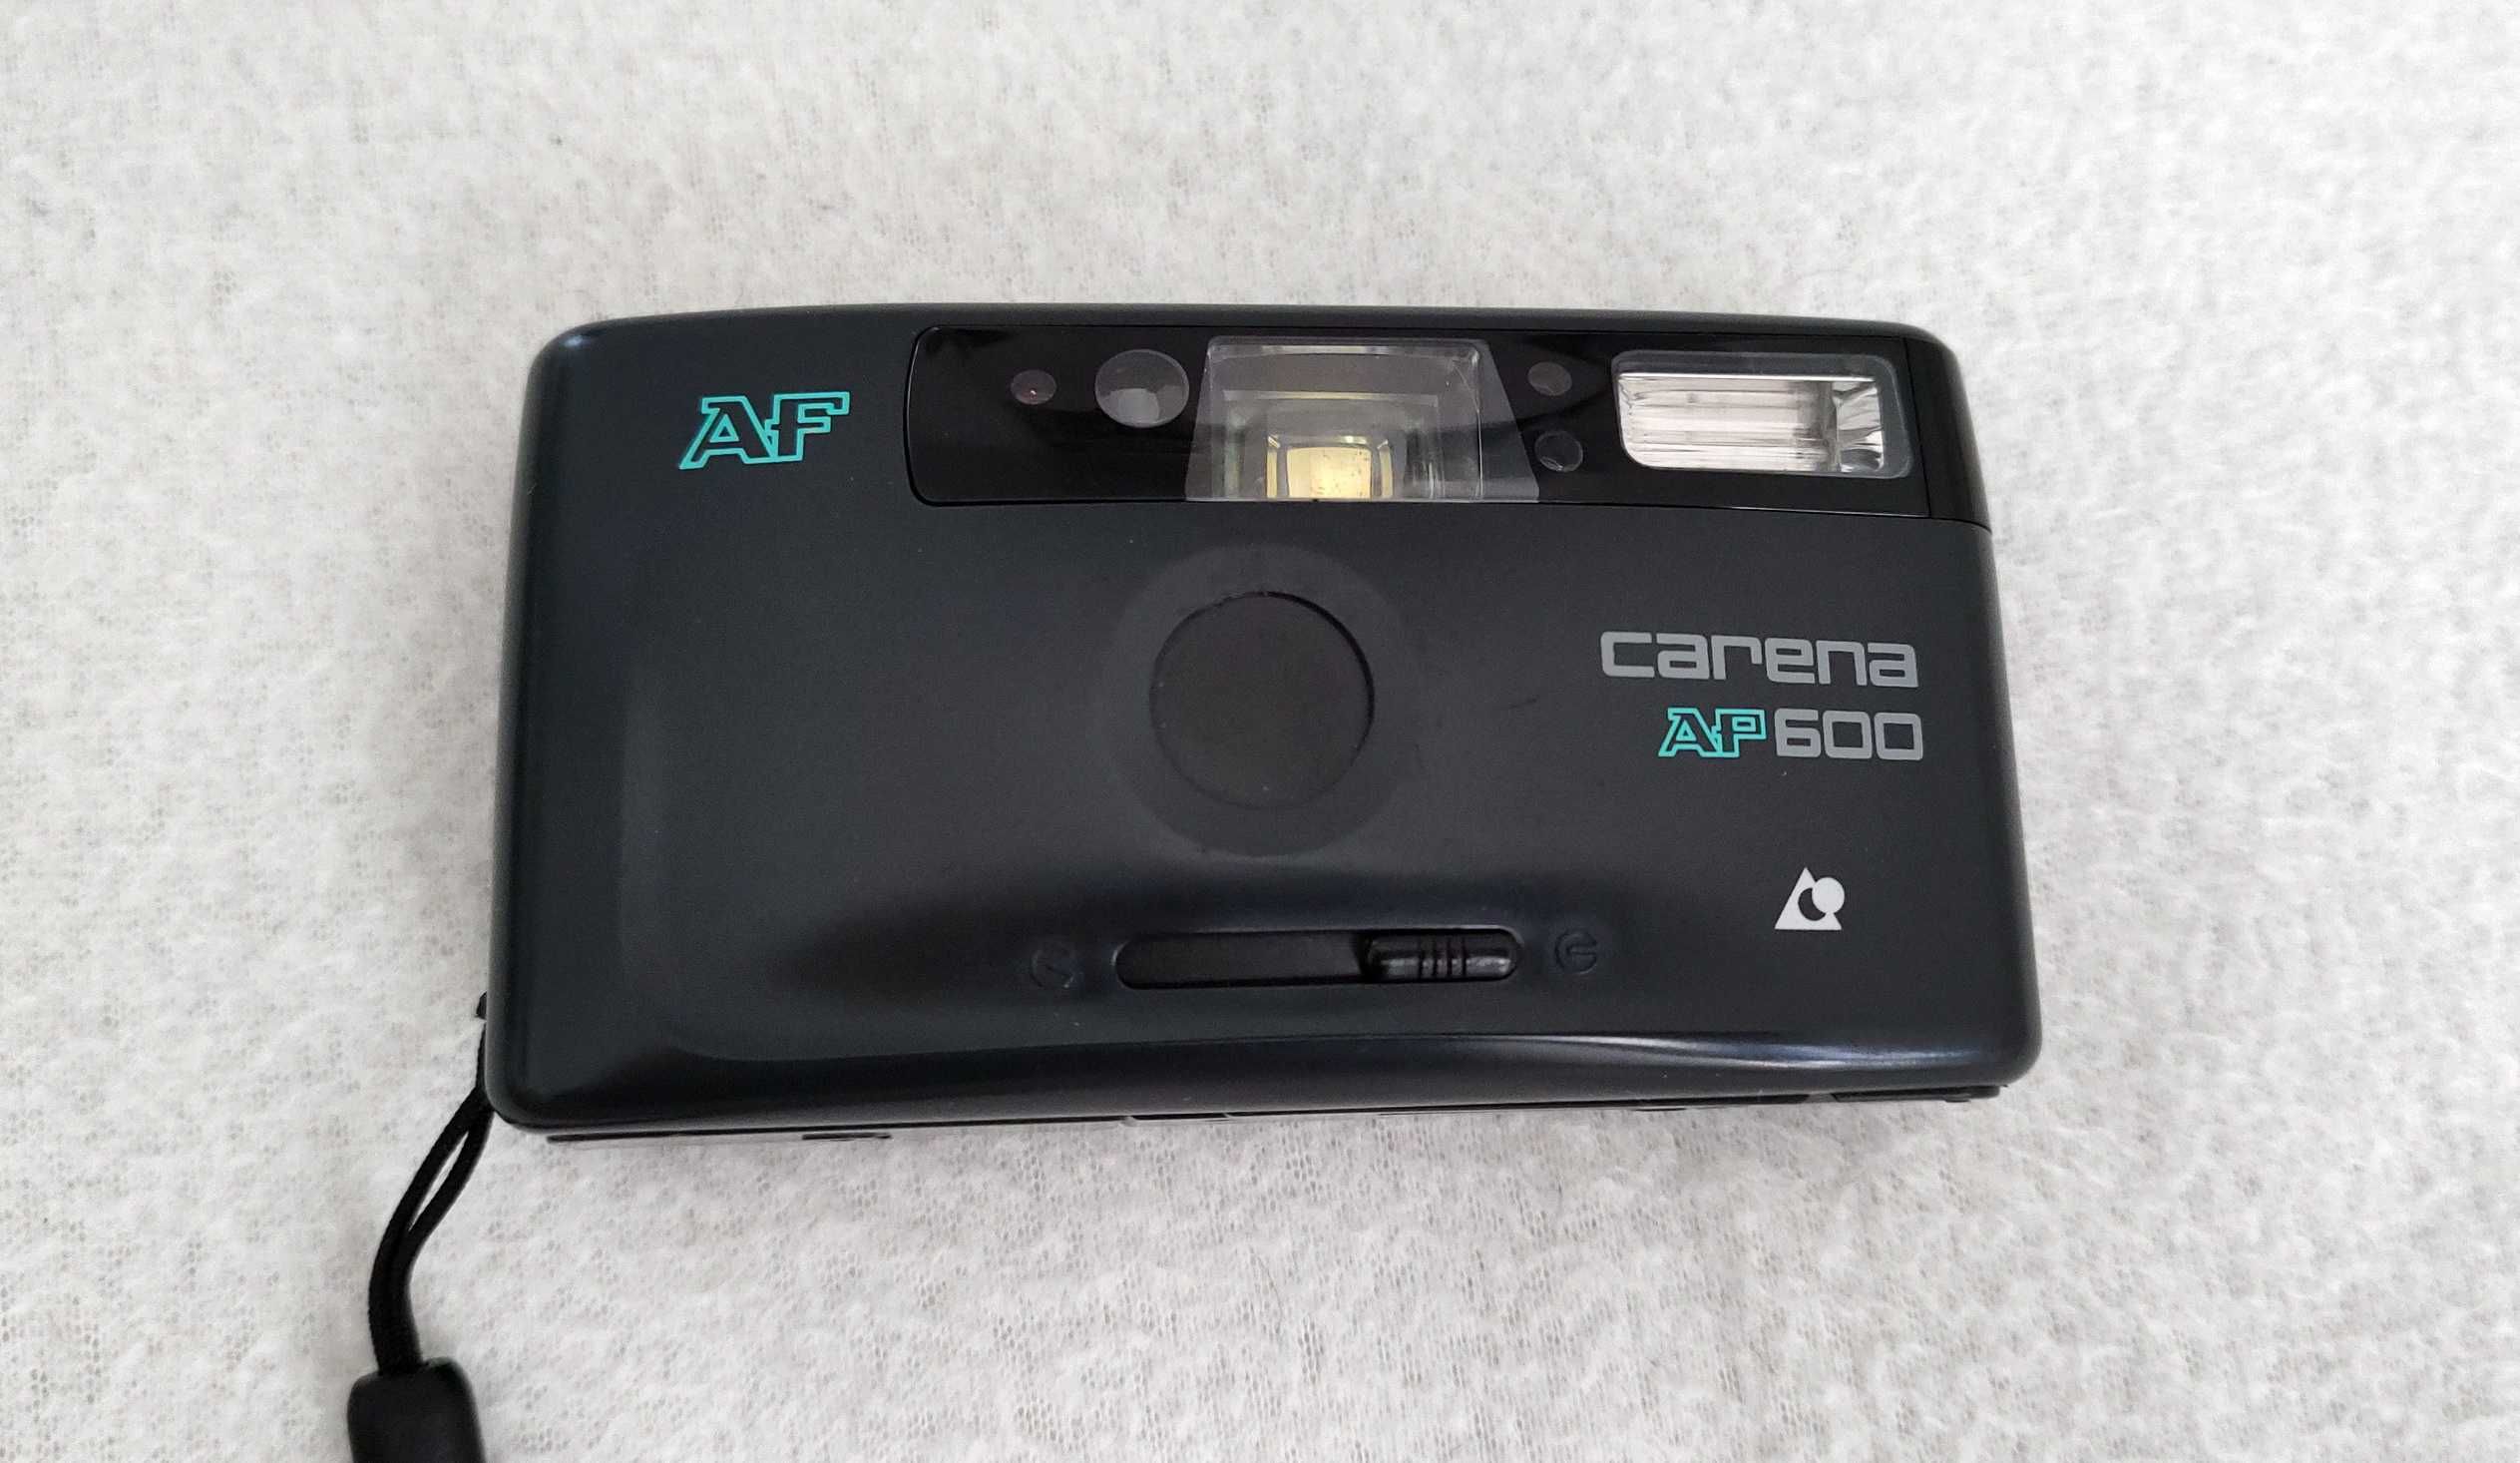 Aparat foto film compact Carena AP600 Film APS - retro - colectie